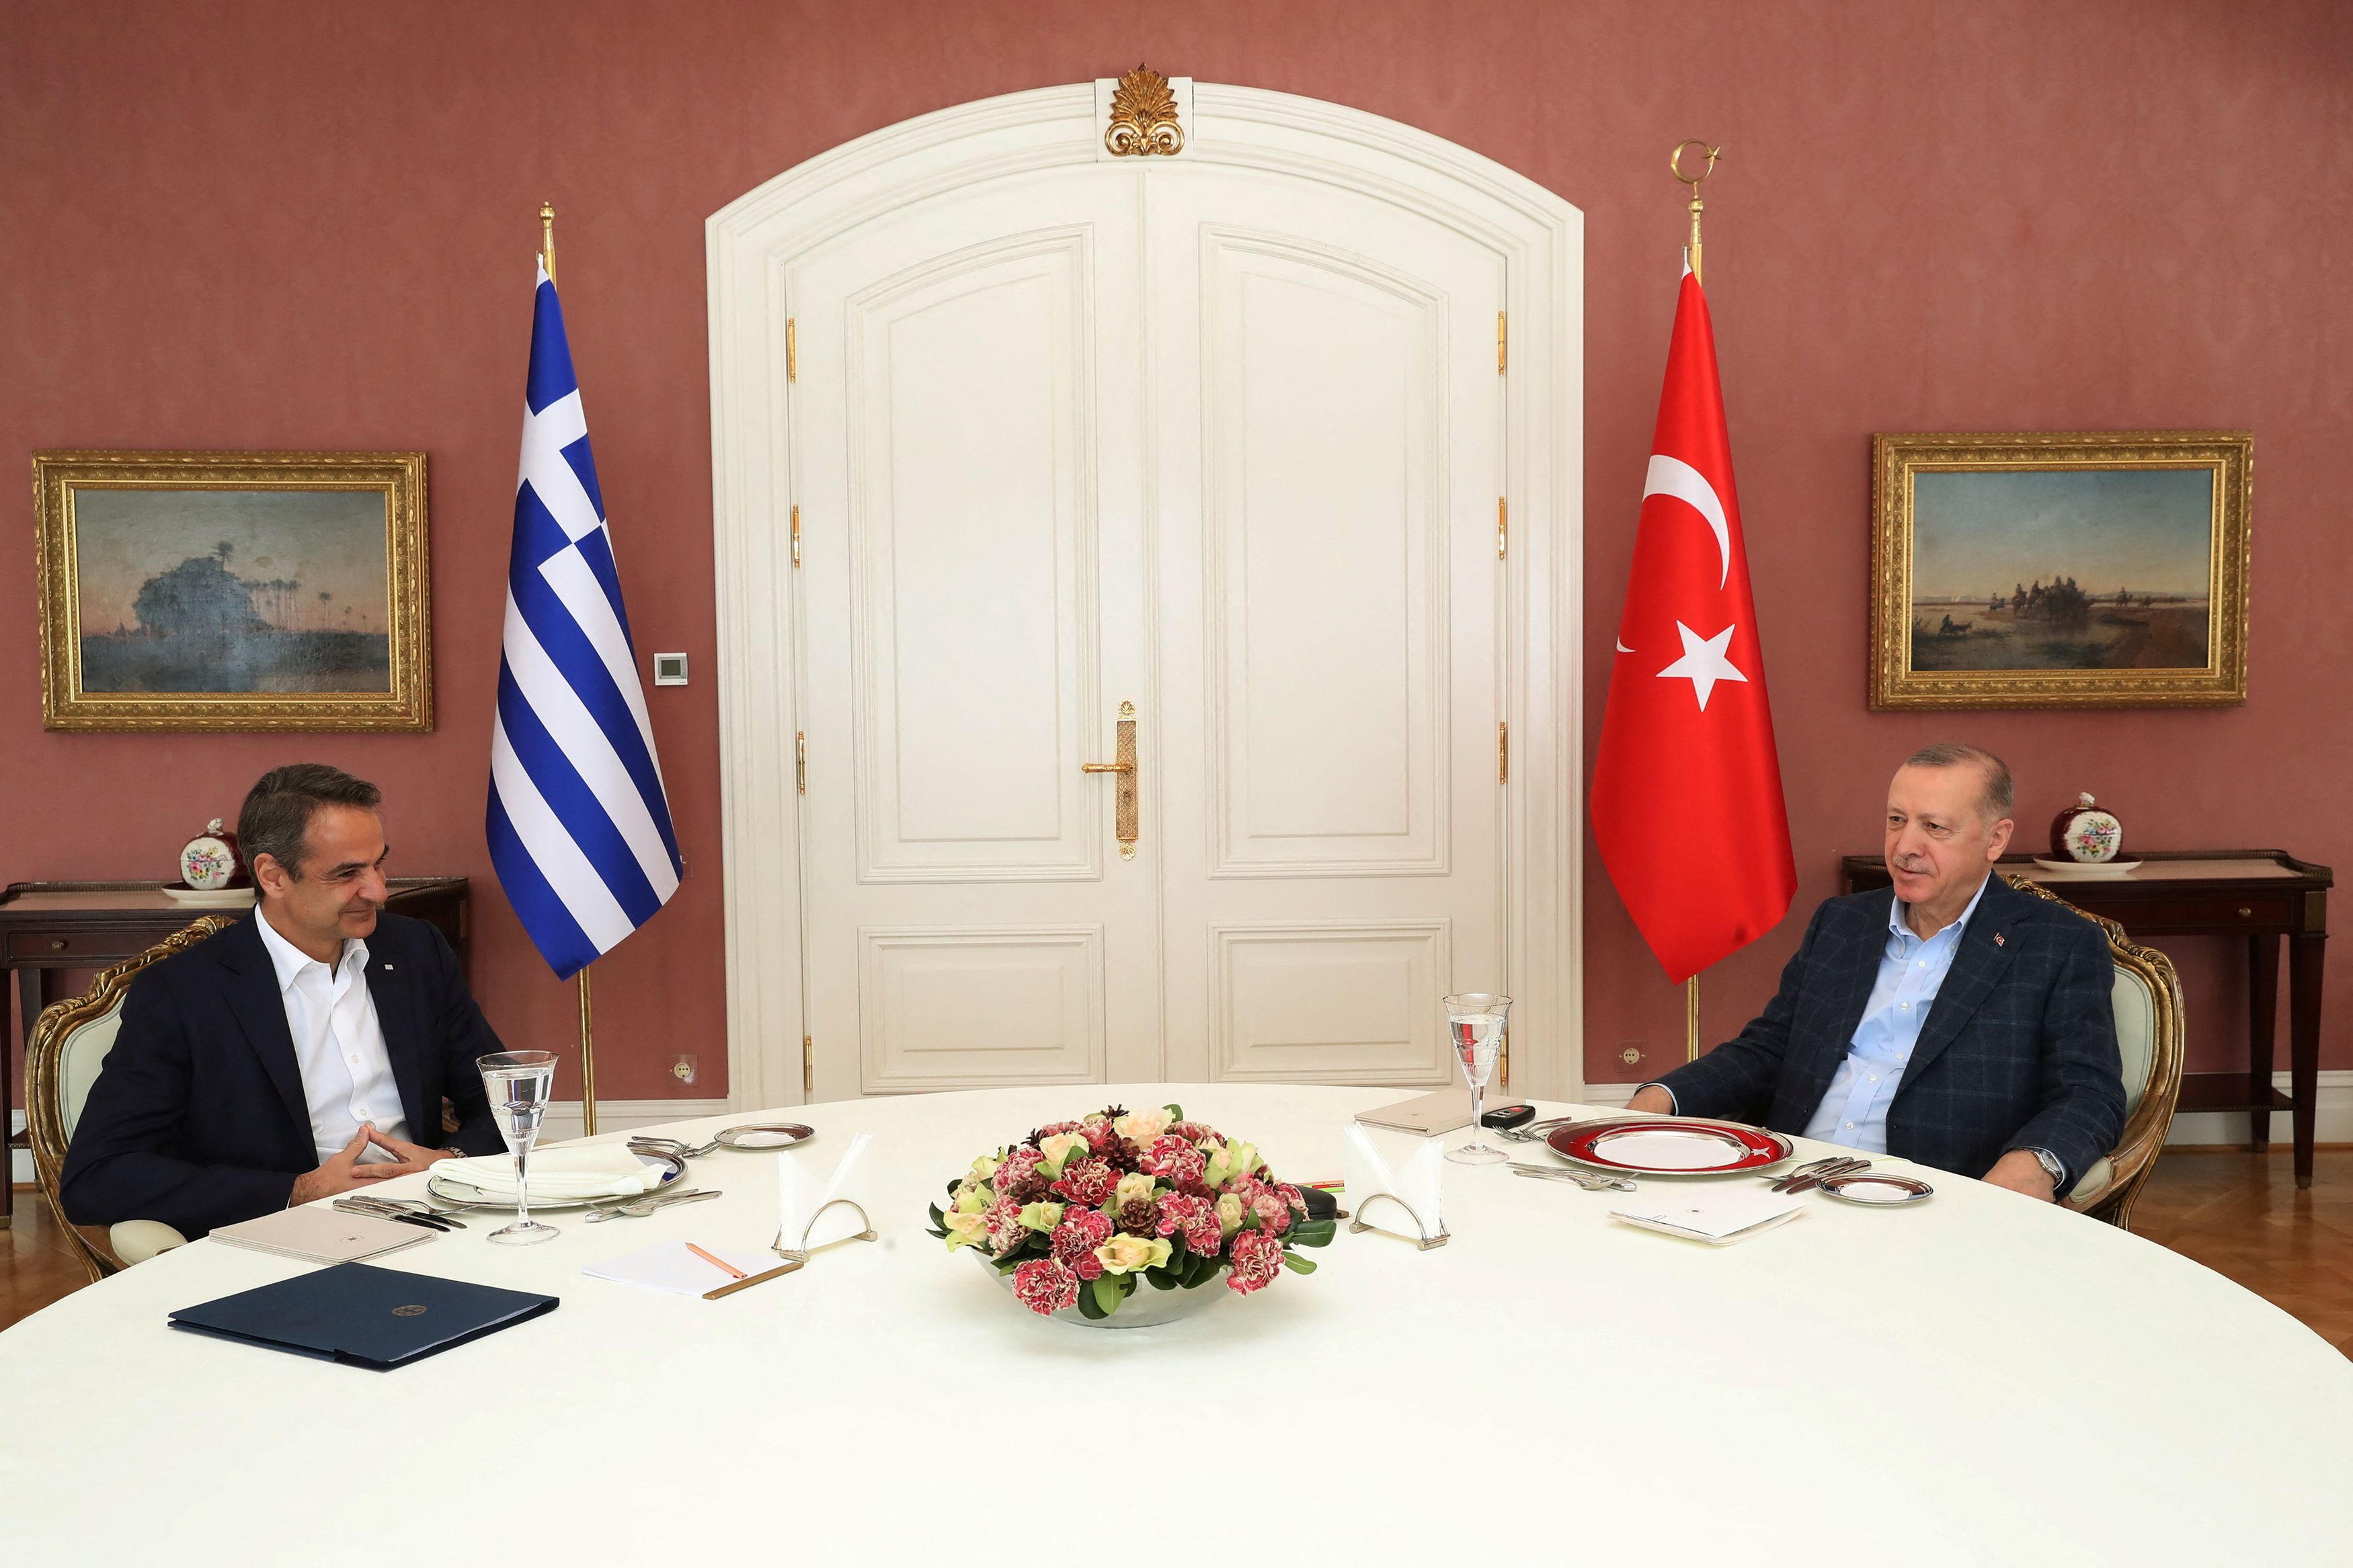 Ελληνοτουρκικά: Ευκαιρία επανεκκίνησης των σχέσεων η συνάντηση Μητσοτάκη - Ερντογάν